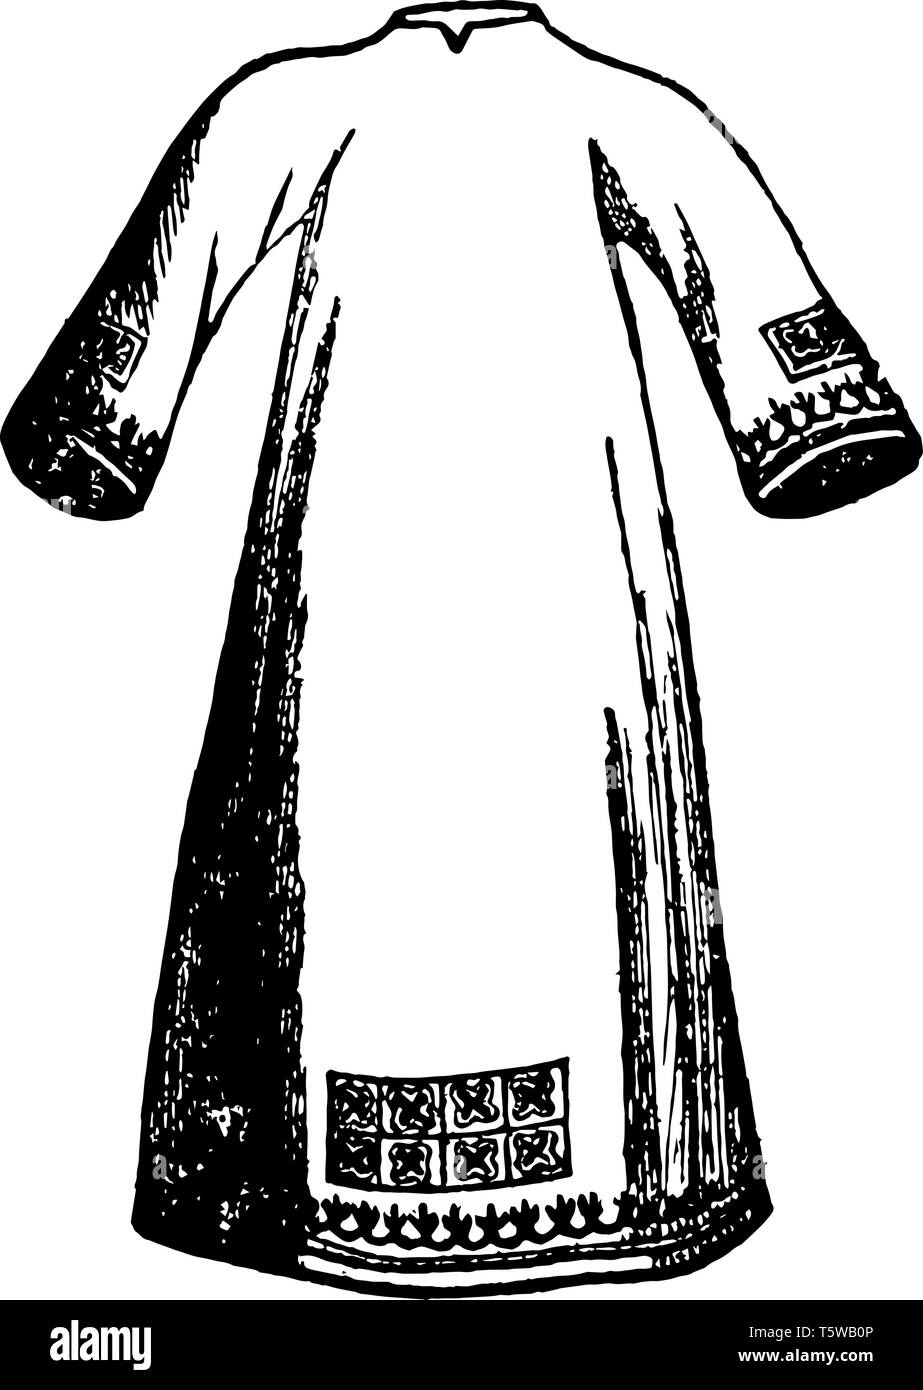 Albe era lunga biancheria bianca vestimenti indossati nei primi tempi da tutti gli ecclesiastici al servizio divino vintage disegno della linea di incisione o illustrazione. Illustrazione Vettoriale